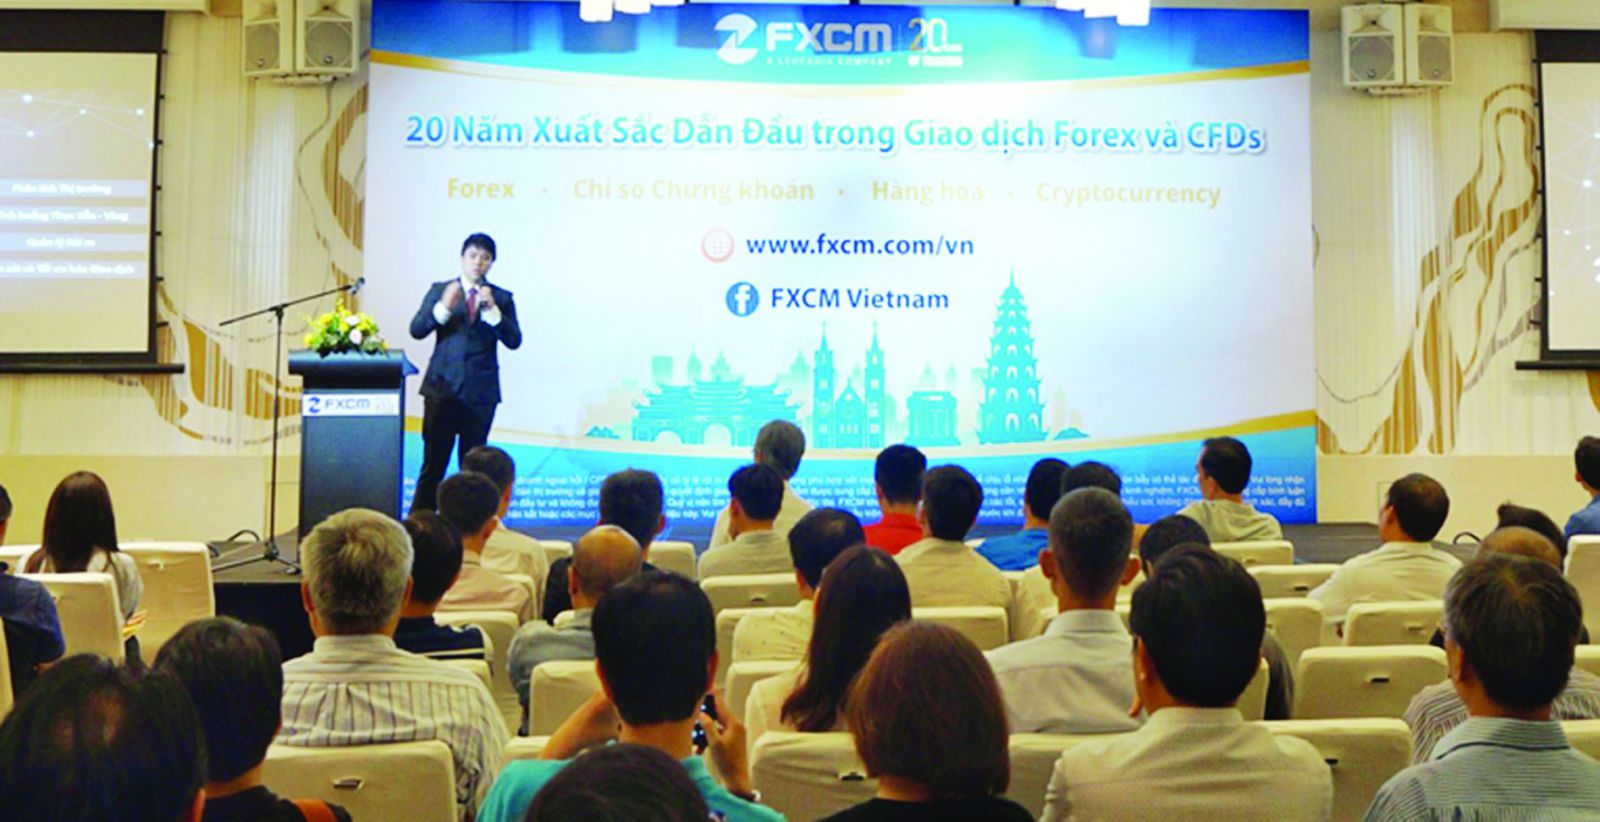 p/Ngân hàng Nhà nước Việt Nam cũng đã khẳng định chưa cấp phép cho bất kỳ tổ chức, cá nhân nào kinh doanh hình thức sàn giao dịch vàng, ngoại hối. Ảnh: Sàn forex FXCM công khai tổ chức kêu gọi nhà đầu tư tham gia giao dịch.